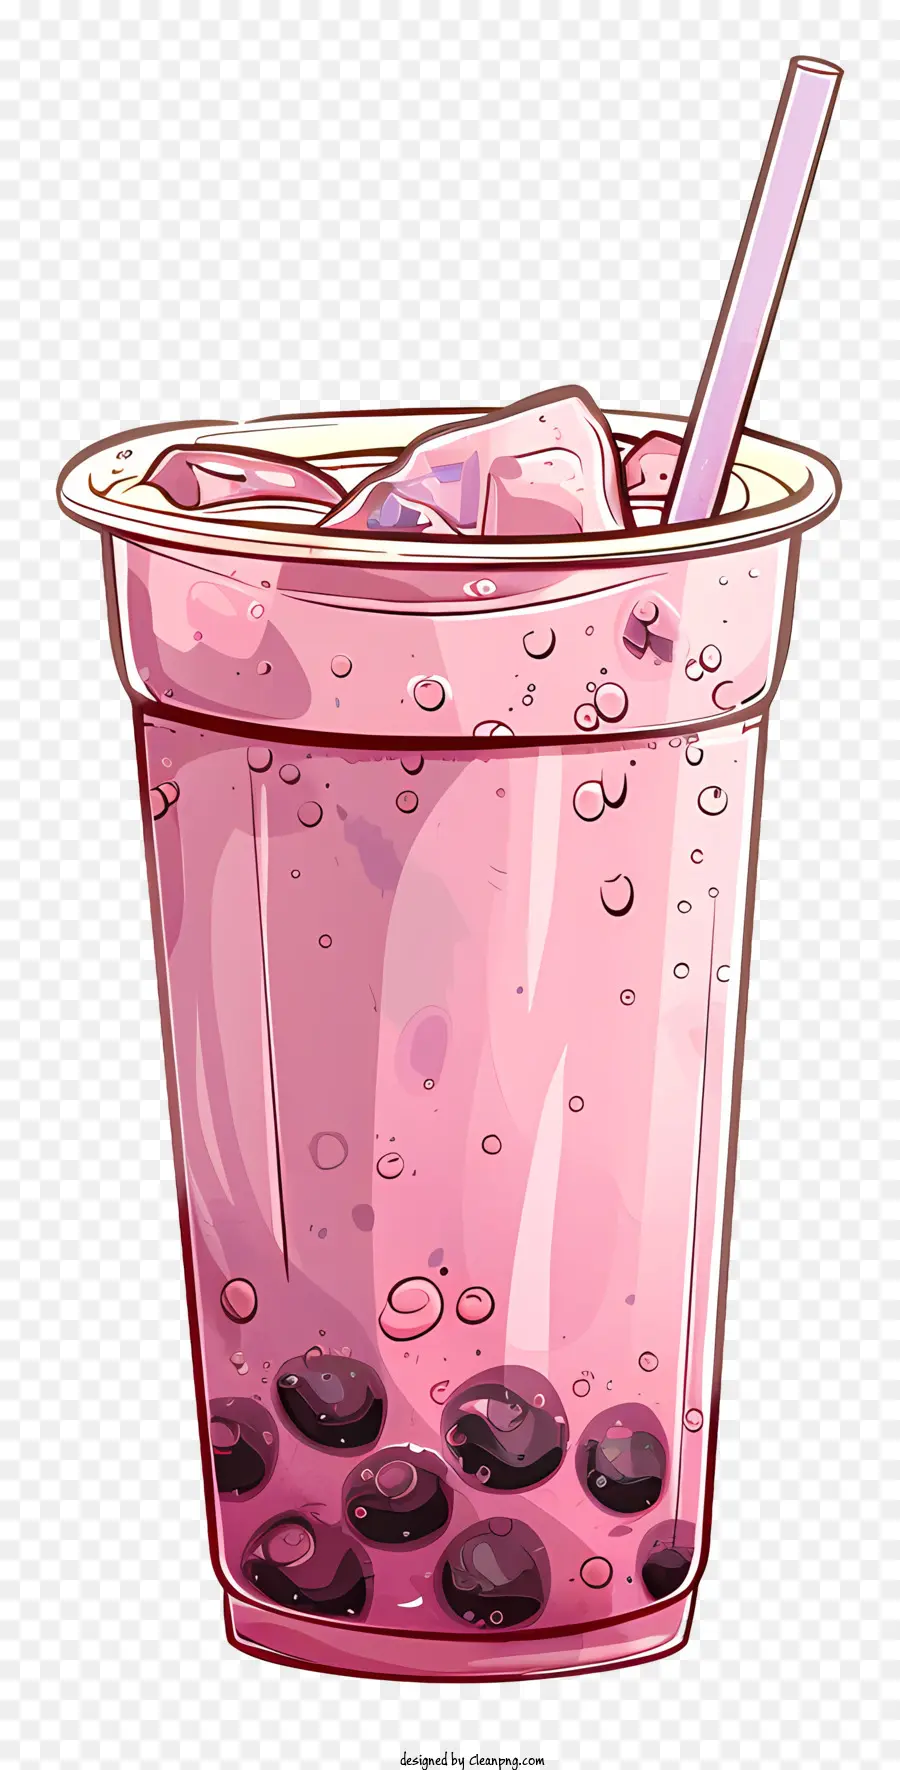 Bubble Tea - Rosa Getränke mit Blaubeeren, Zitrone, Strohhalmen, Flecken